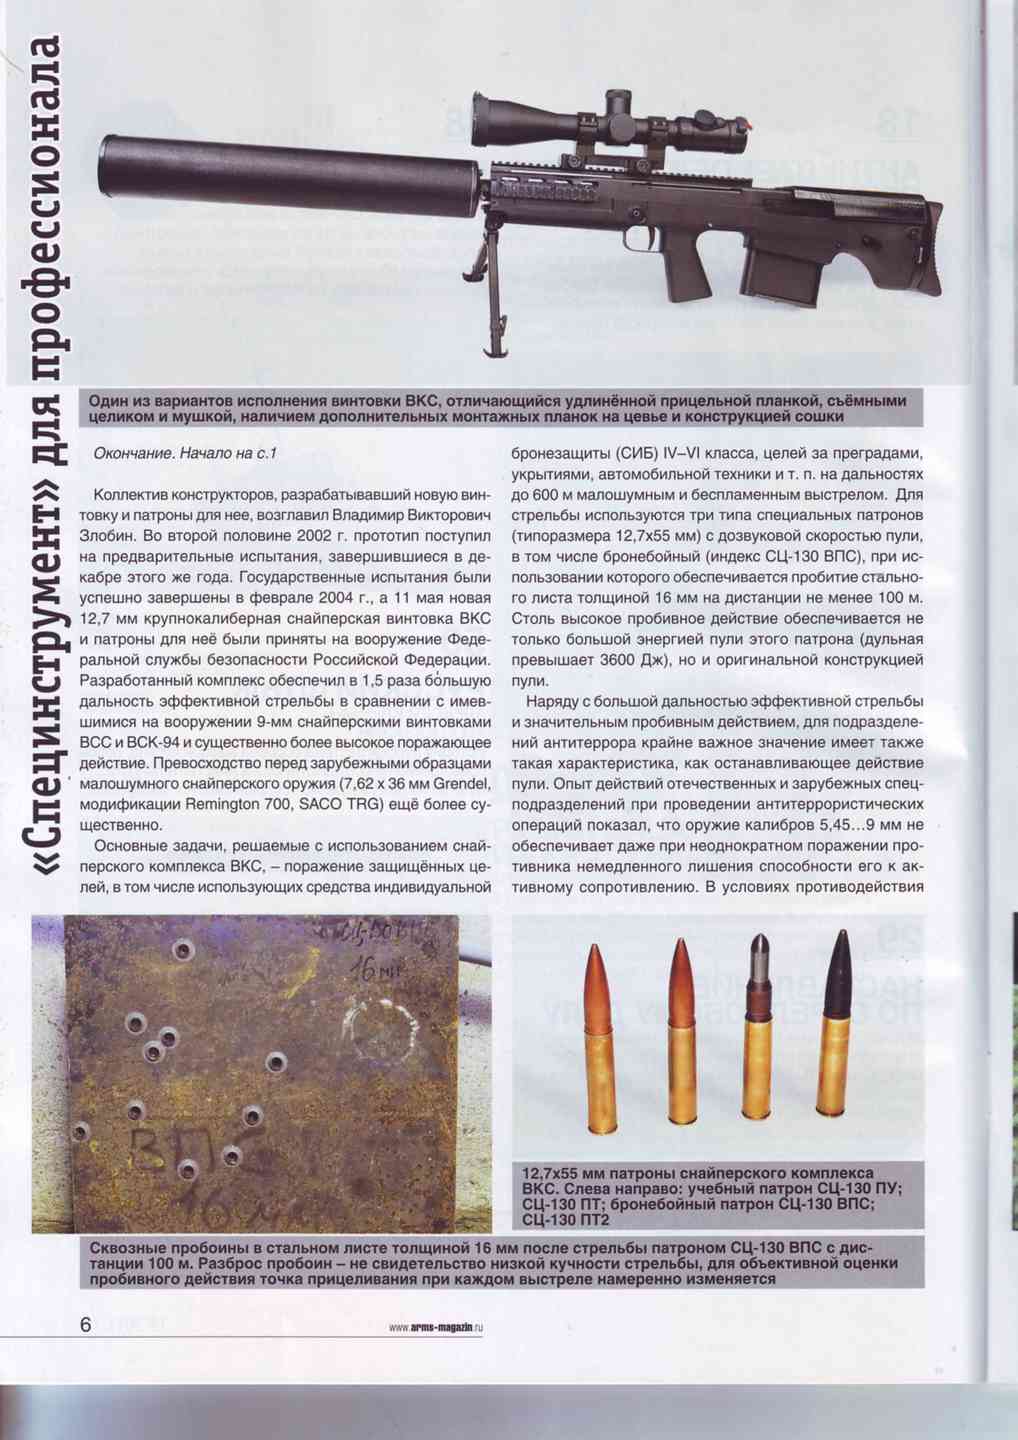 Крупнокалиберные винтовки свн-98, ксвк и оц-44 (россия) – военное оружие и армии мира